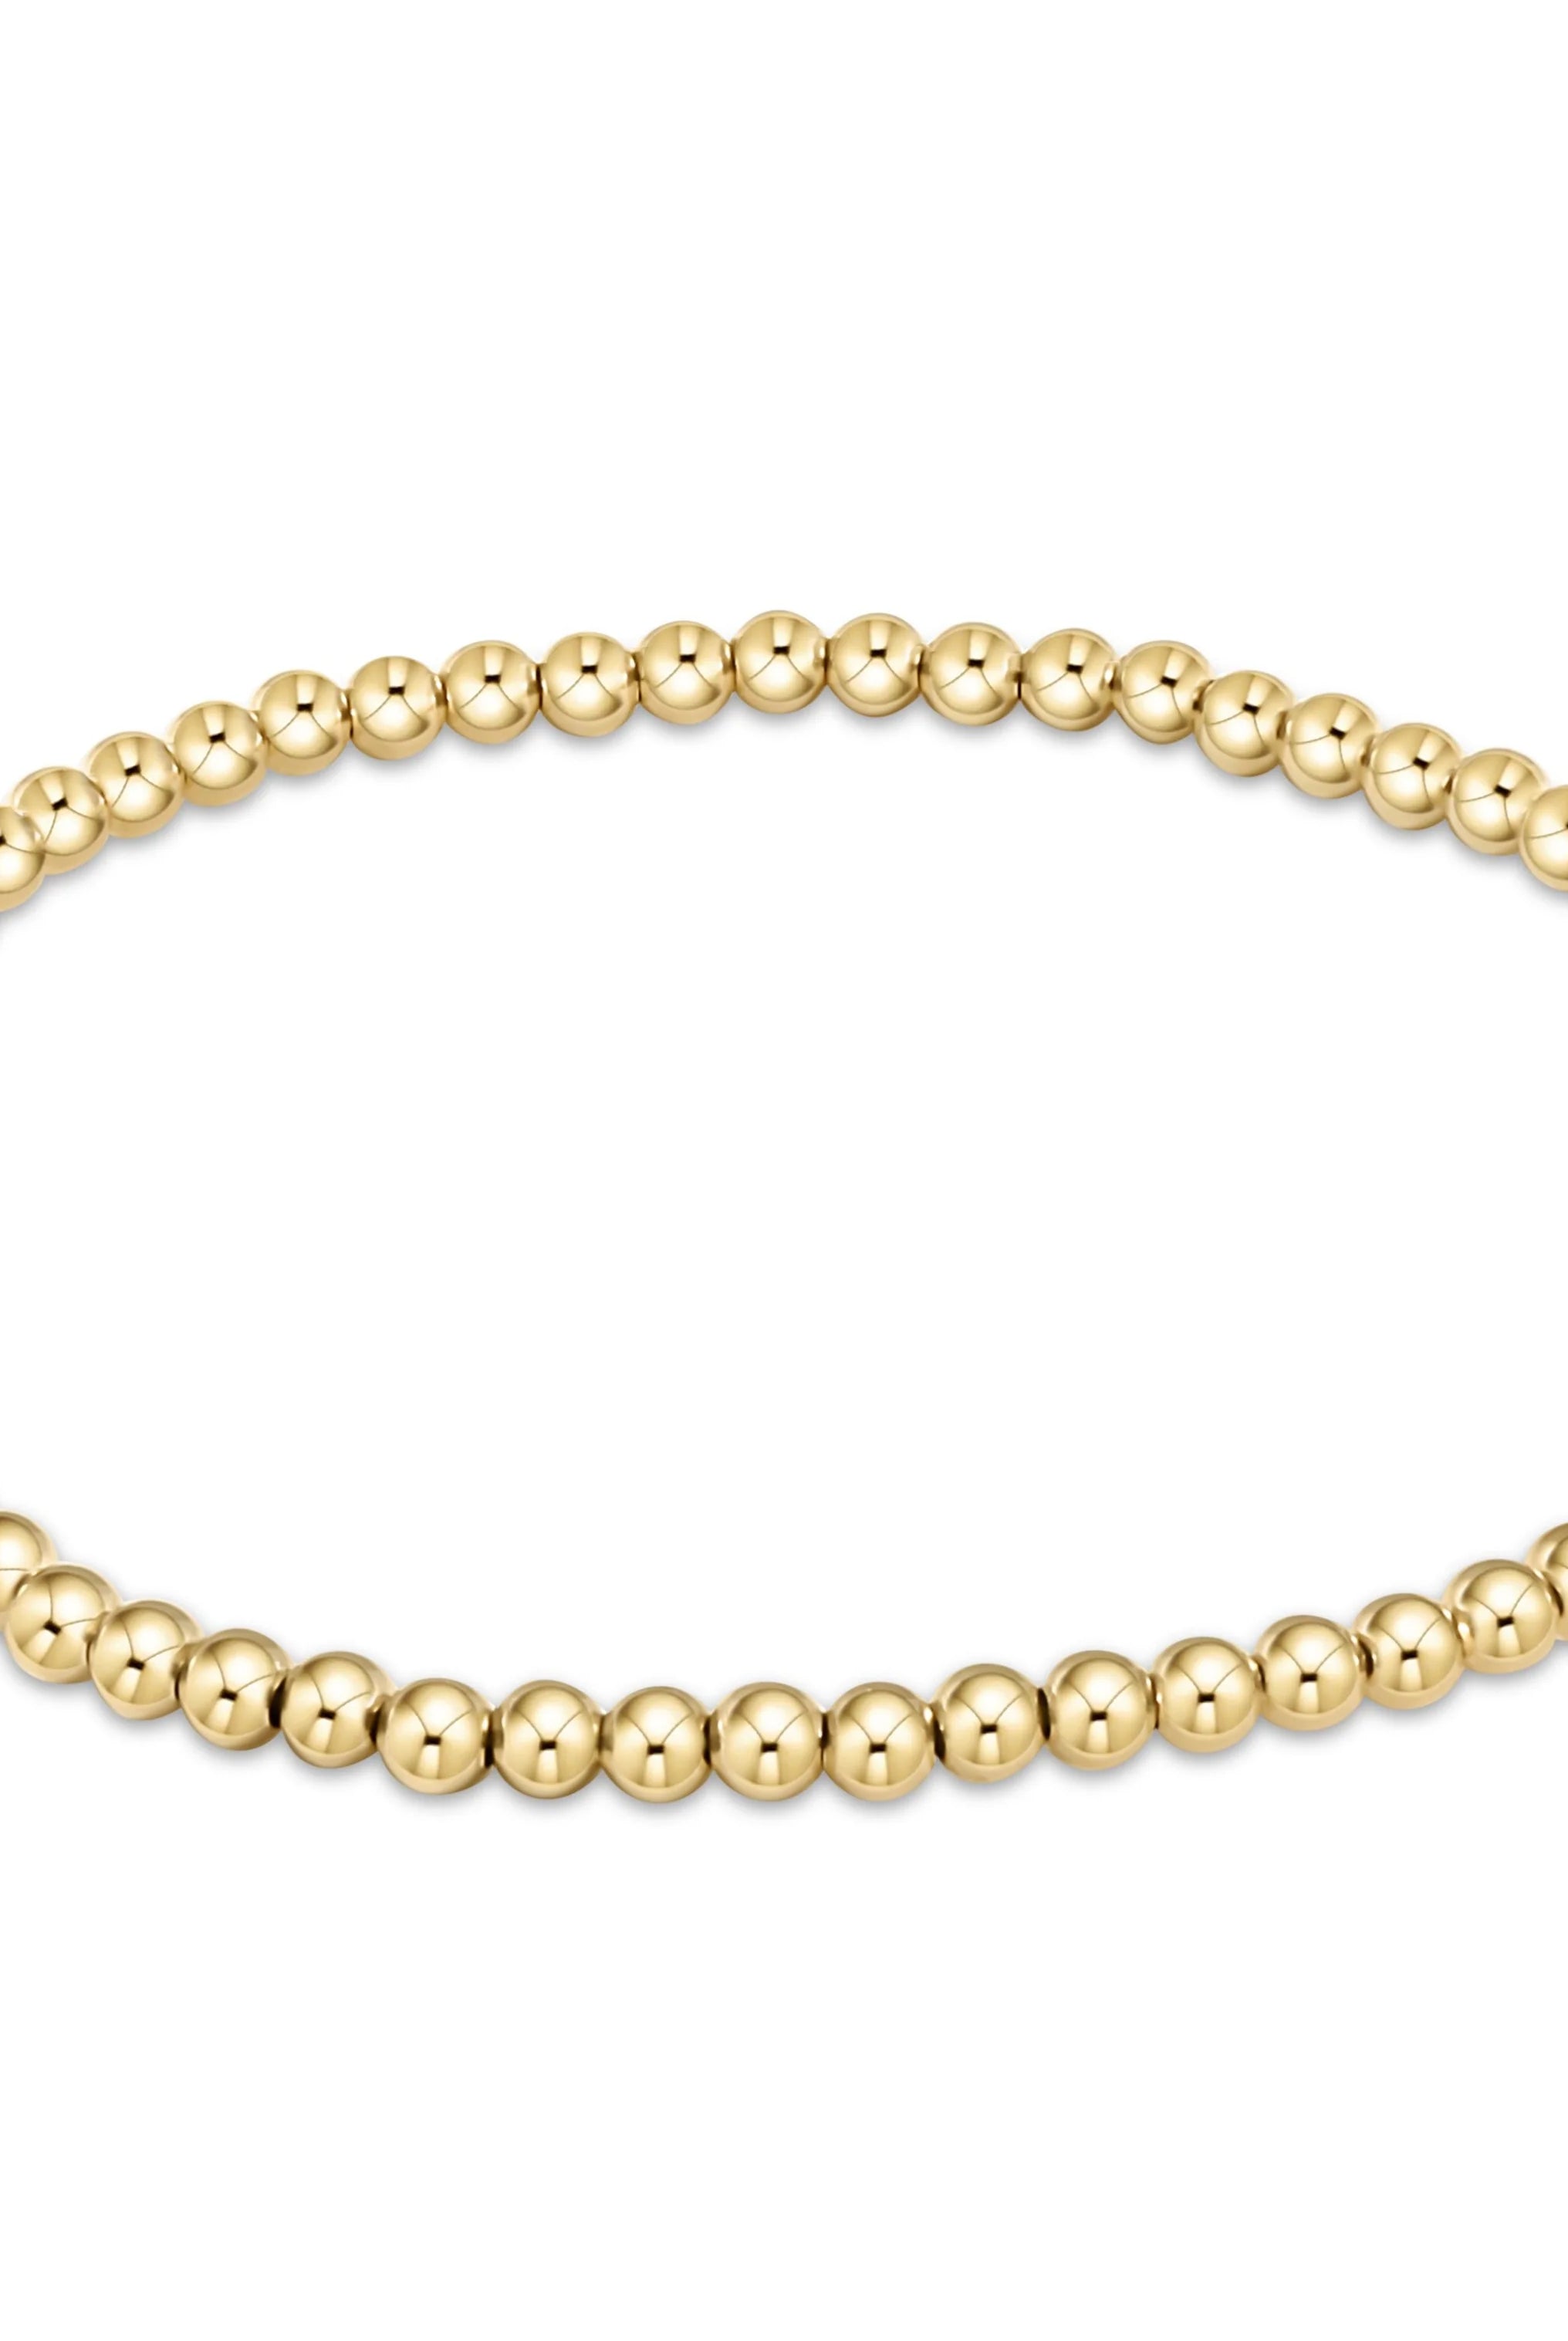 Egirl Classic 3mm Gold Bracelet-Bracelets-eNewton-The Lovely Closet, Women's Fashion Boutique in Alexandria, KY